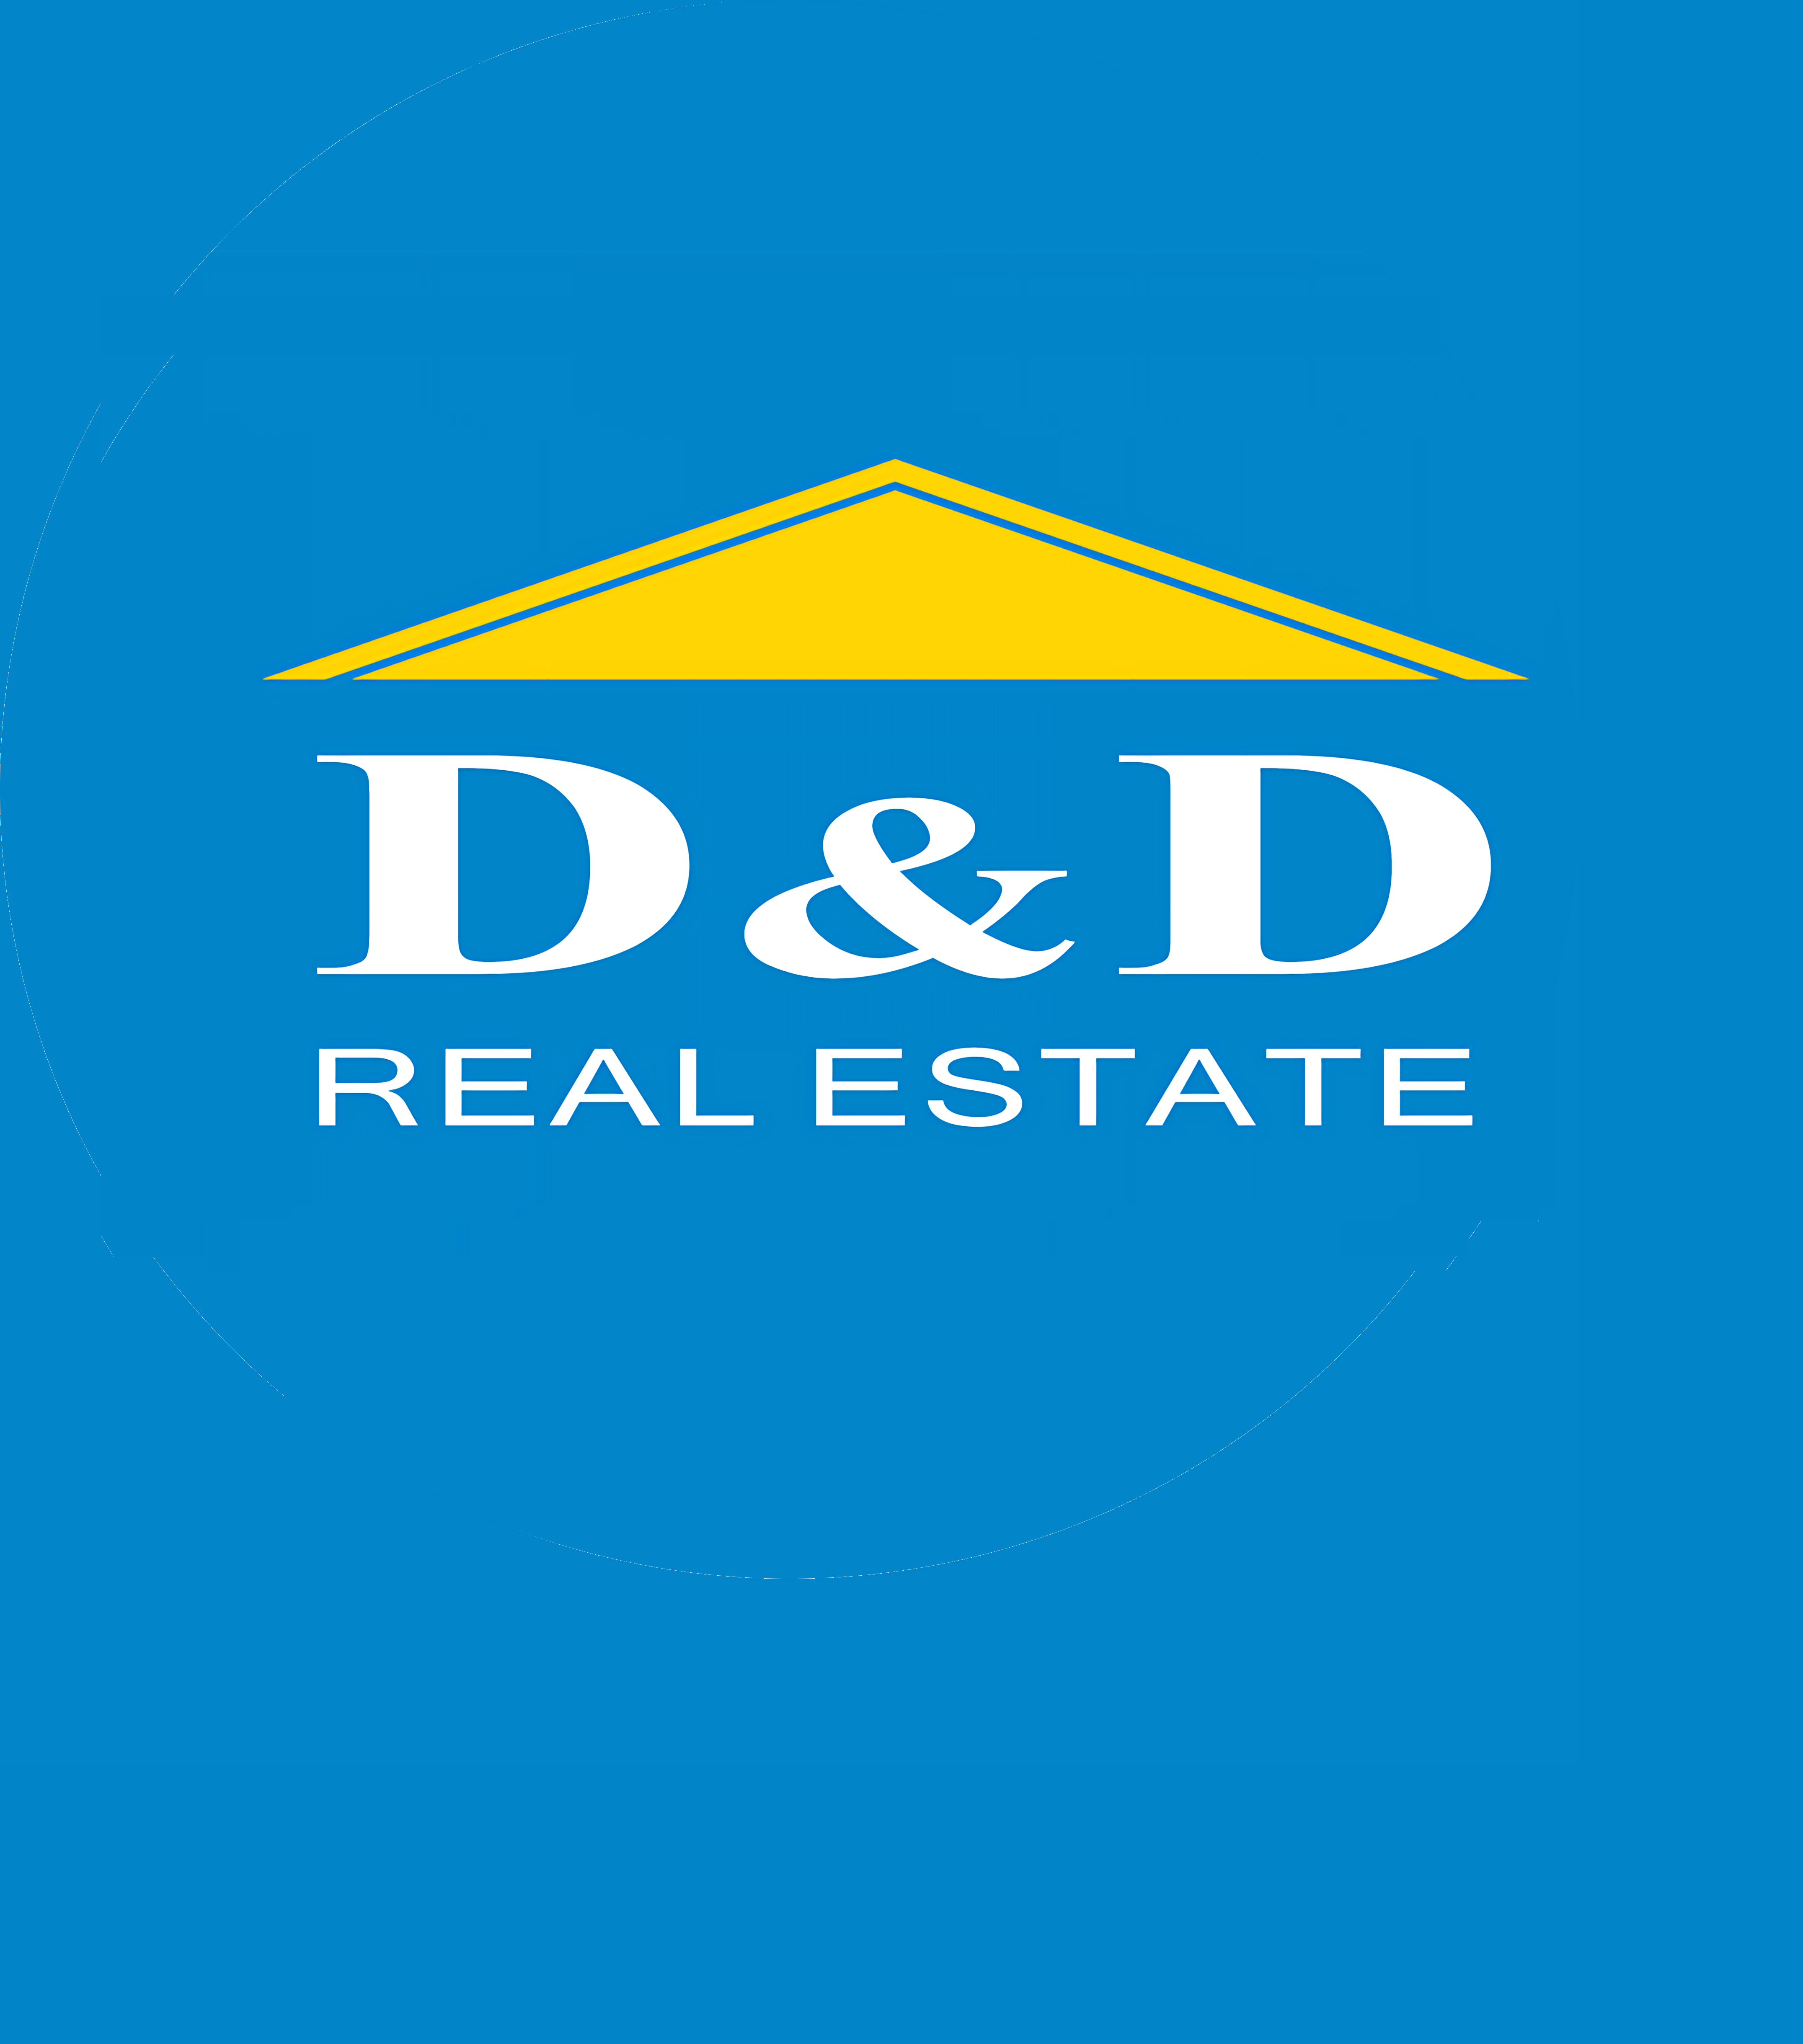 DD Property Management Real Estate Agent